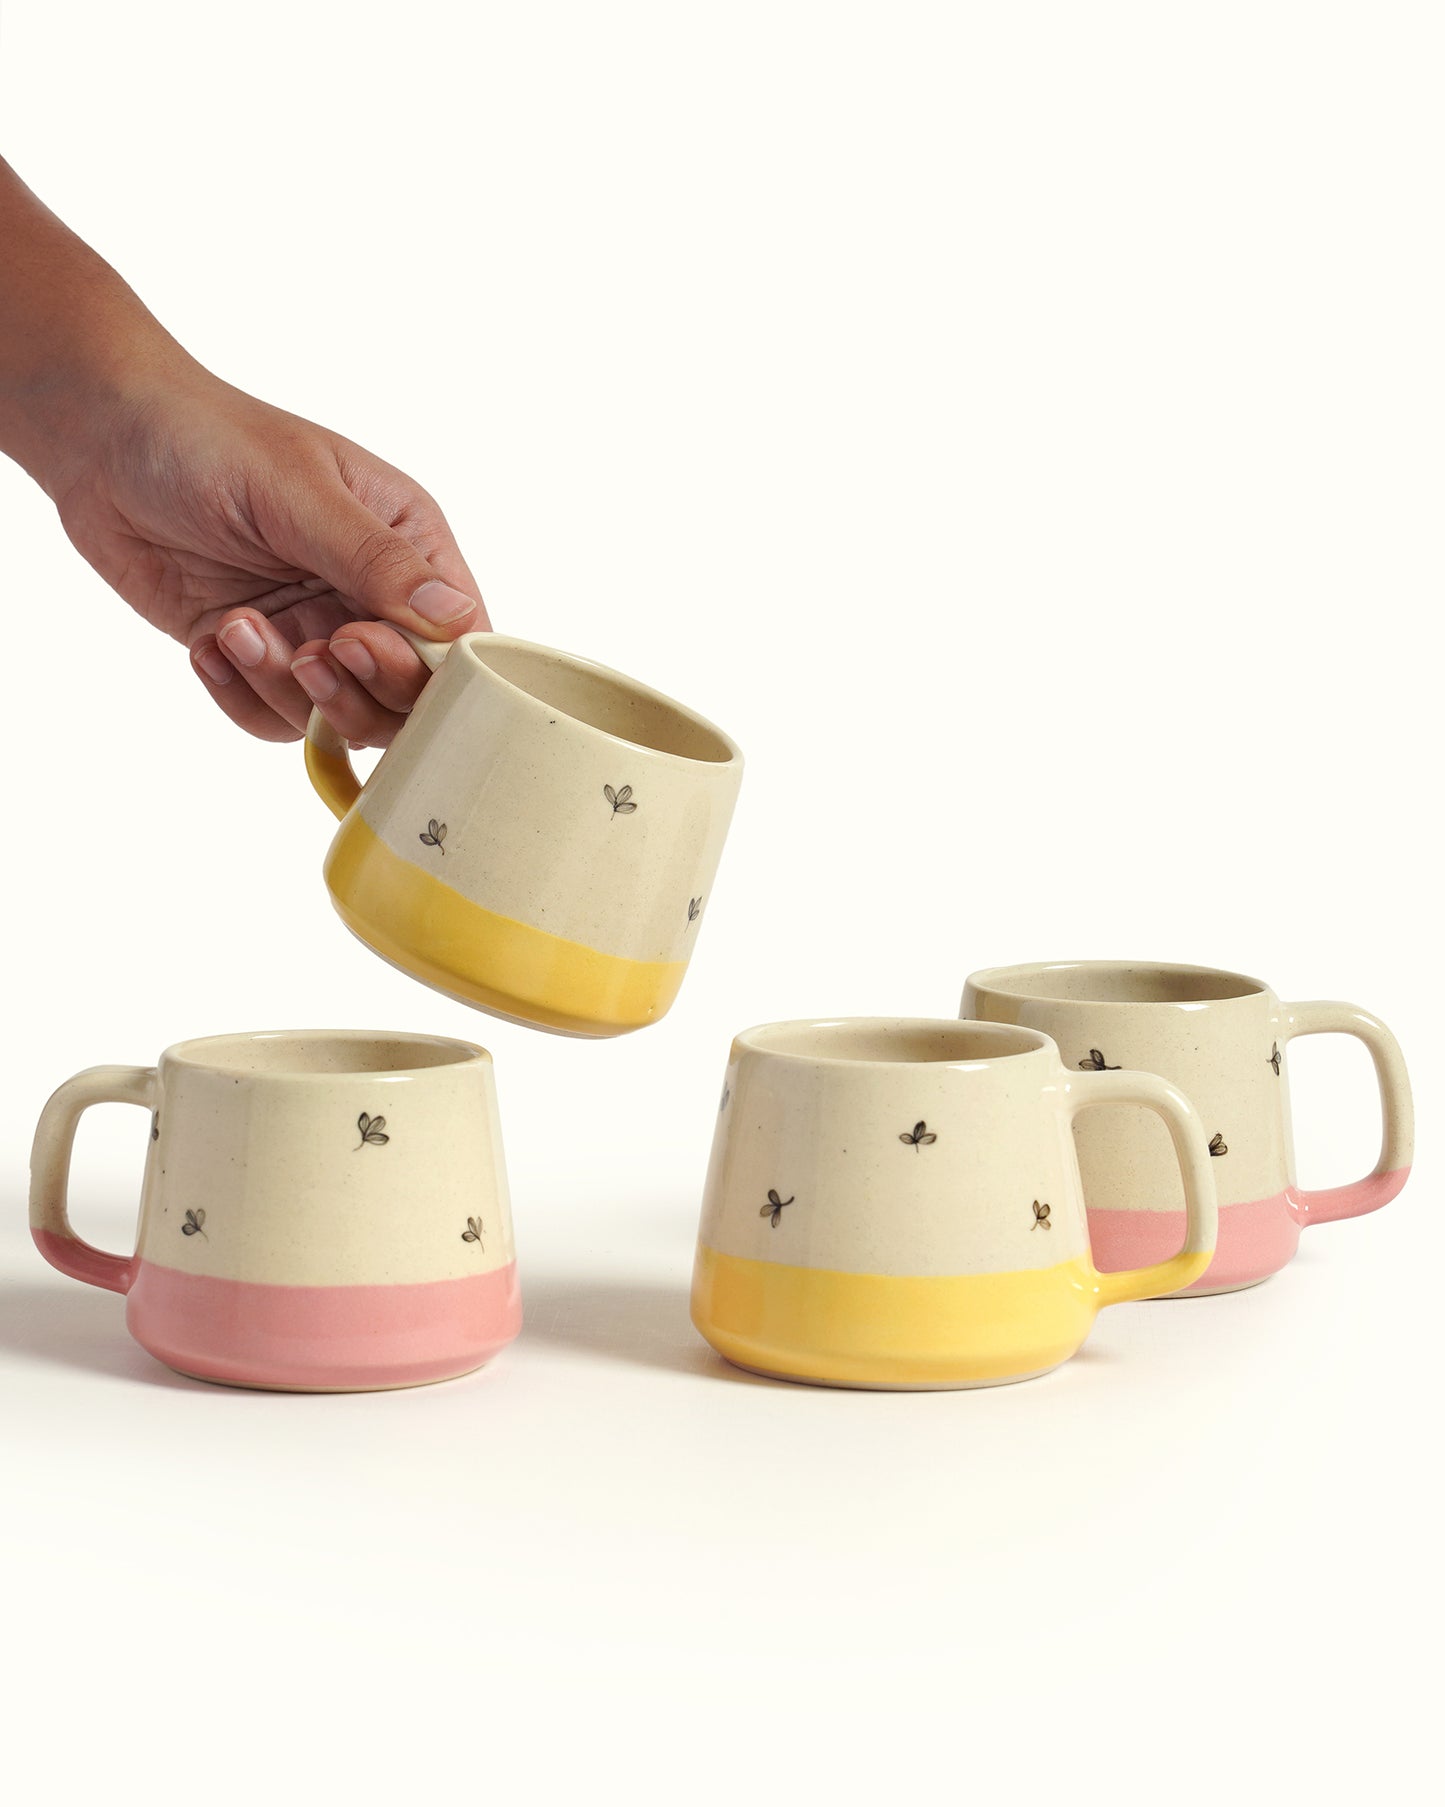 Bela Teacups (Set of 4)